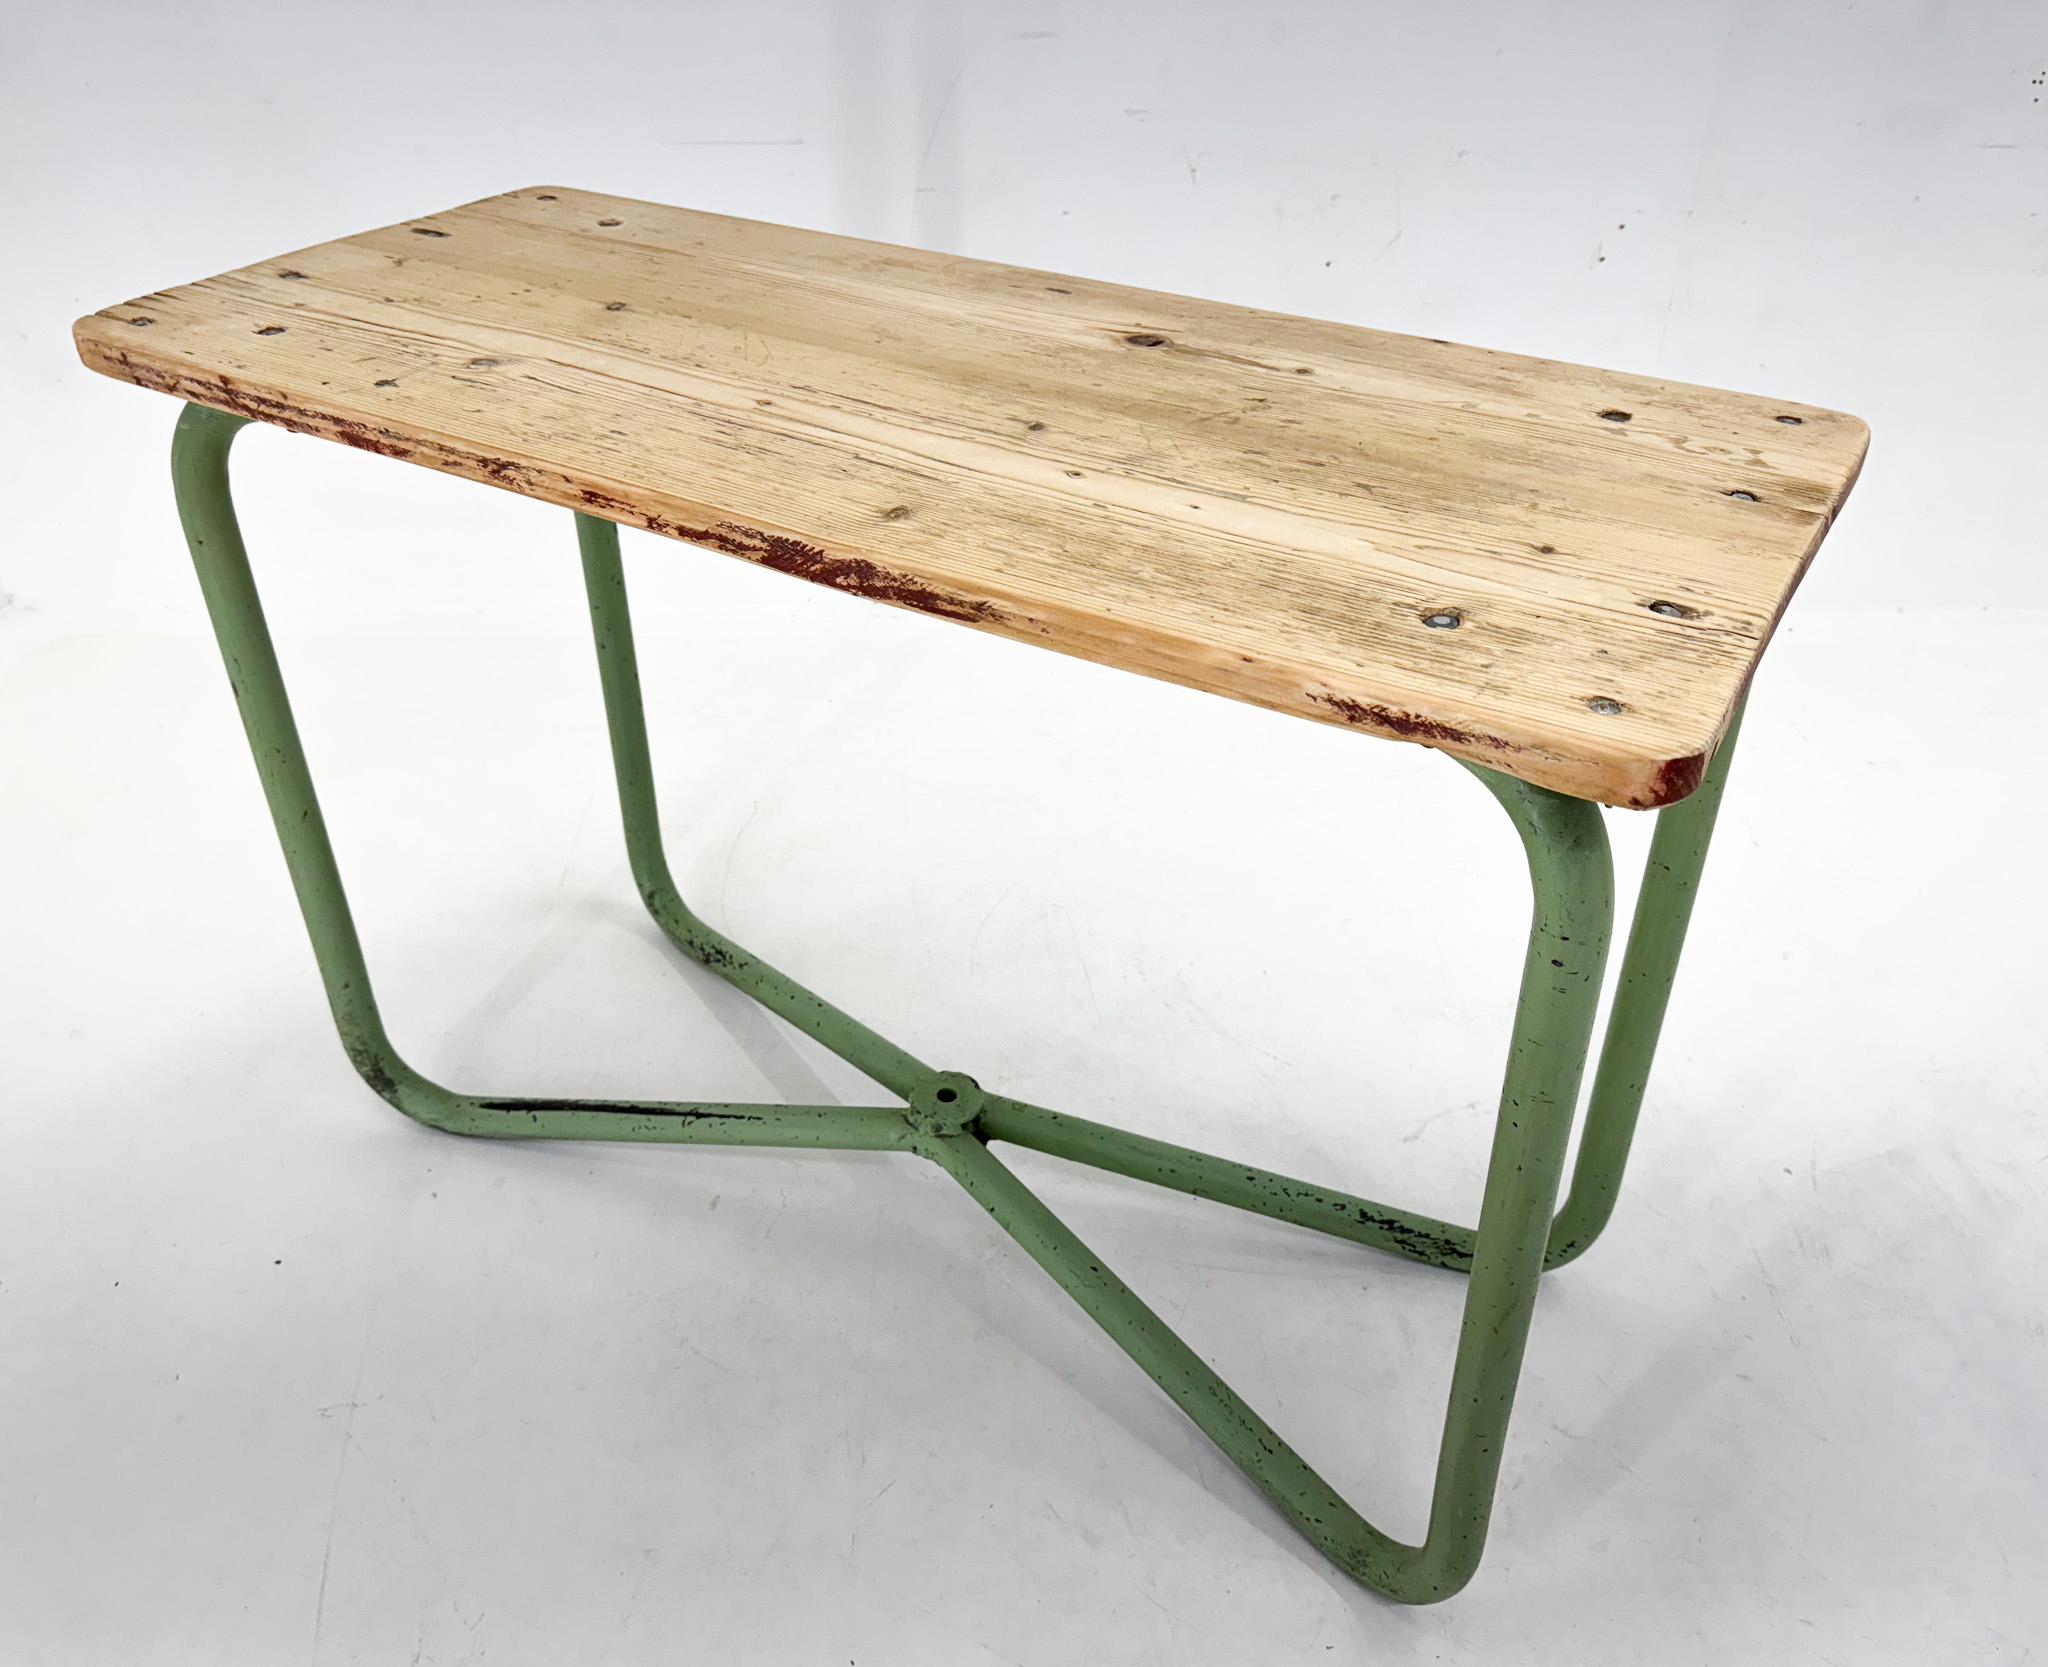 Table d'appoint ou console industrielle vintage. Etat original. La partie en bois a été poncée. 